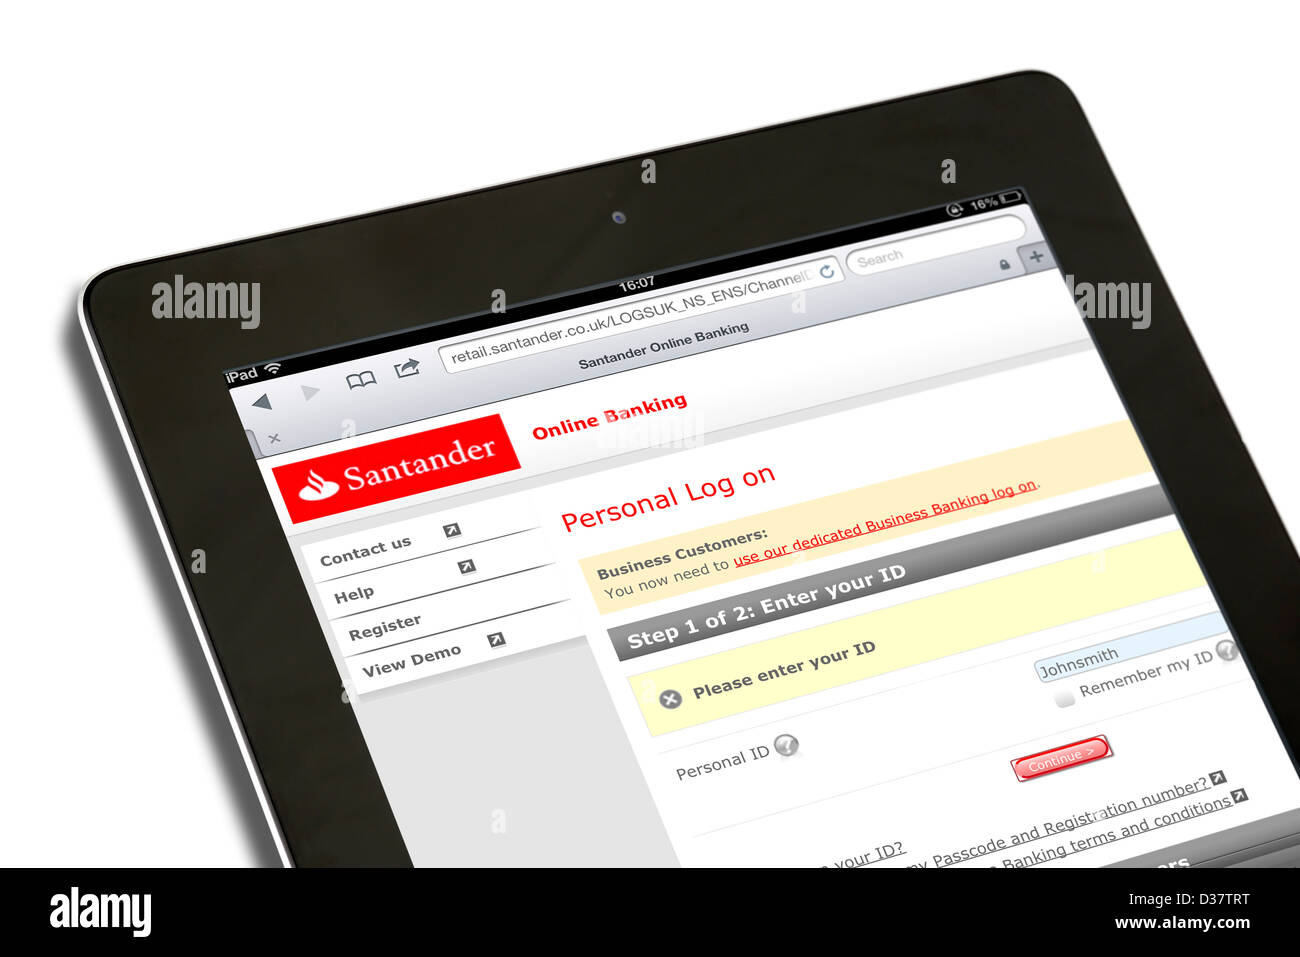 Santander banca online sobre una 4ª generación de Apple iPad tablet pc Foto de stock